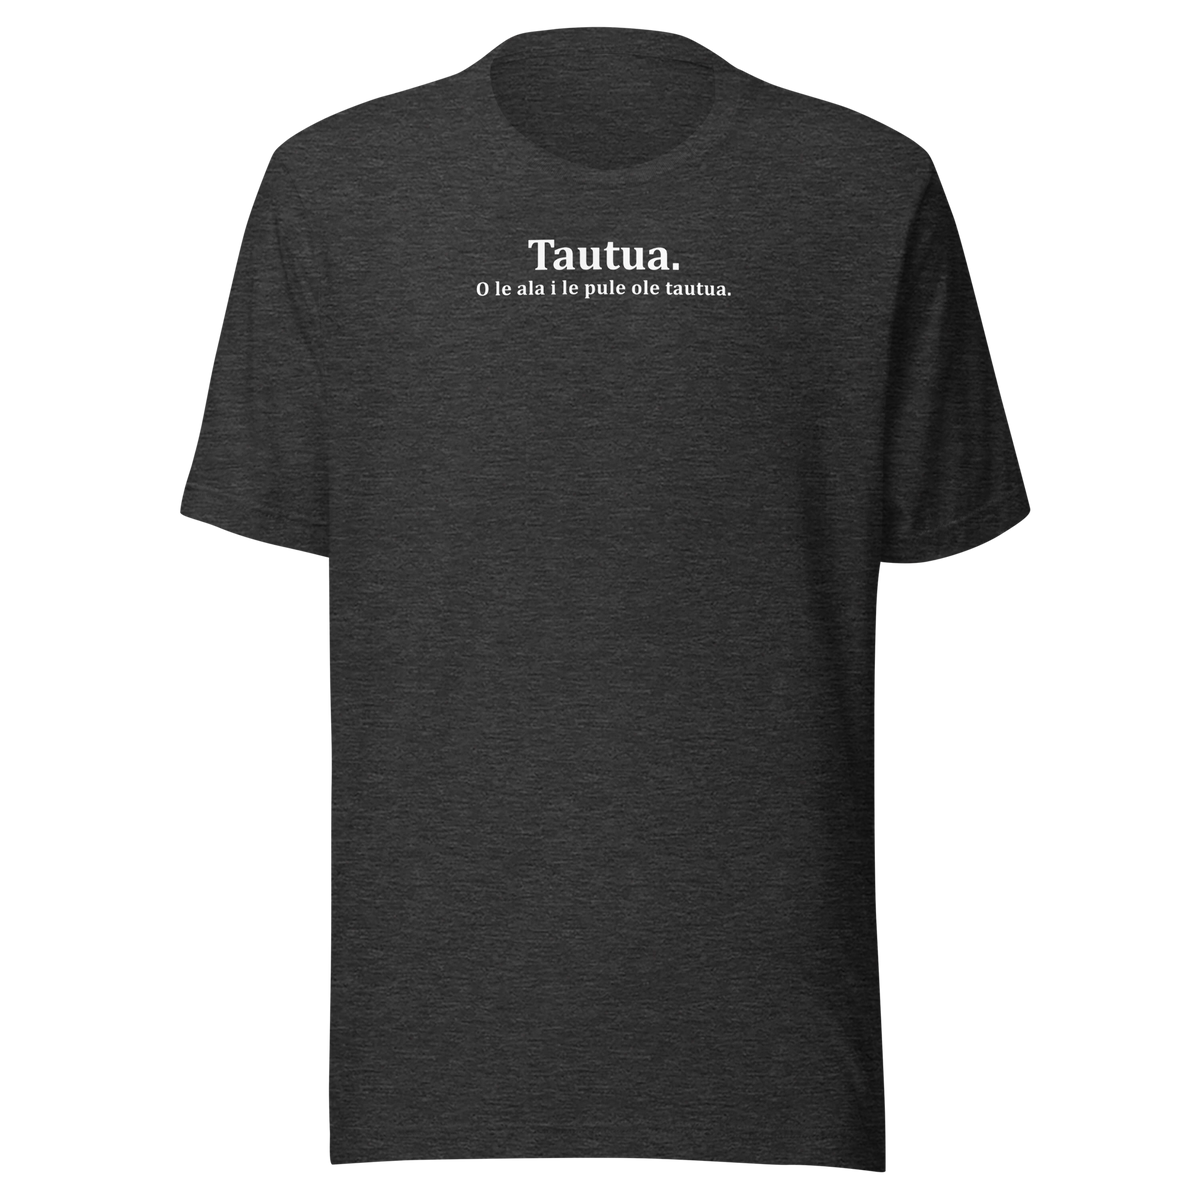 Tautua. Men's T-Shirt